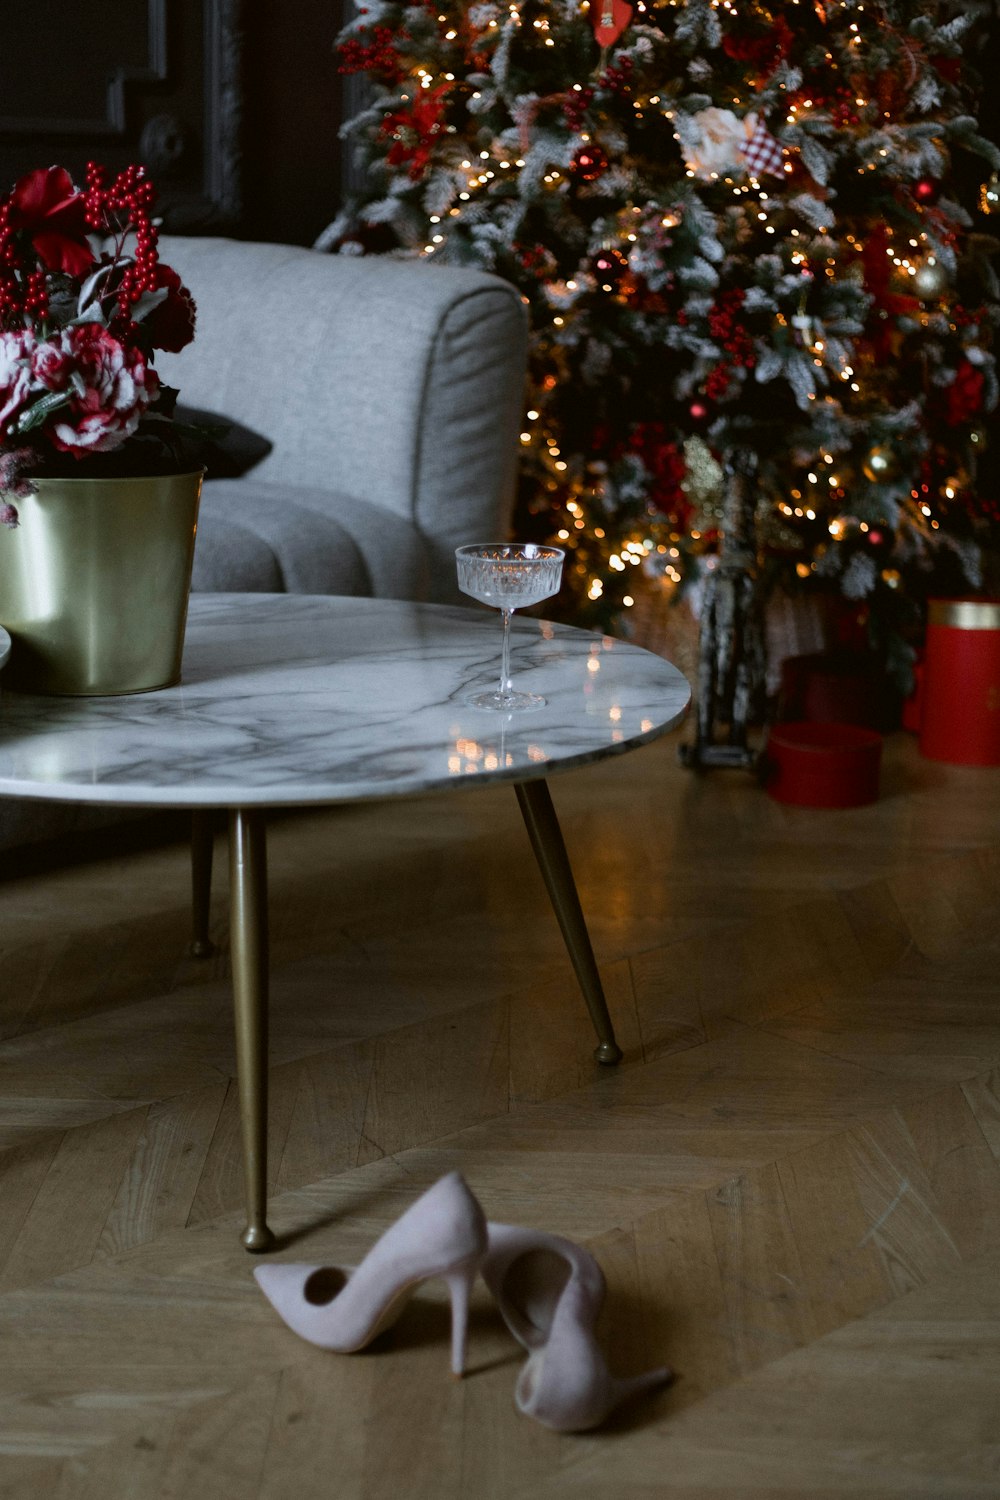 Un paio di scarpe bianche sedute sopra un tavolo accanto a un albero di Natale